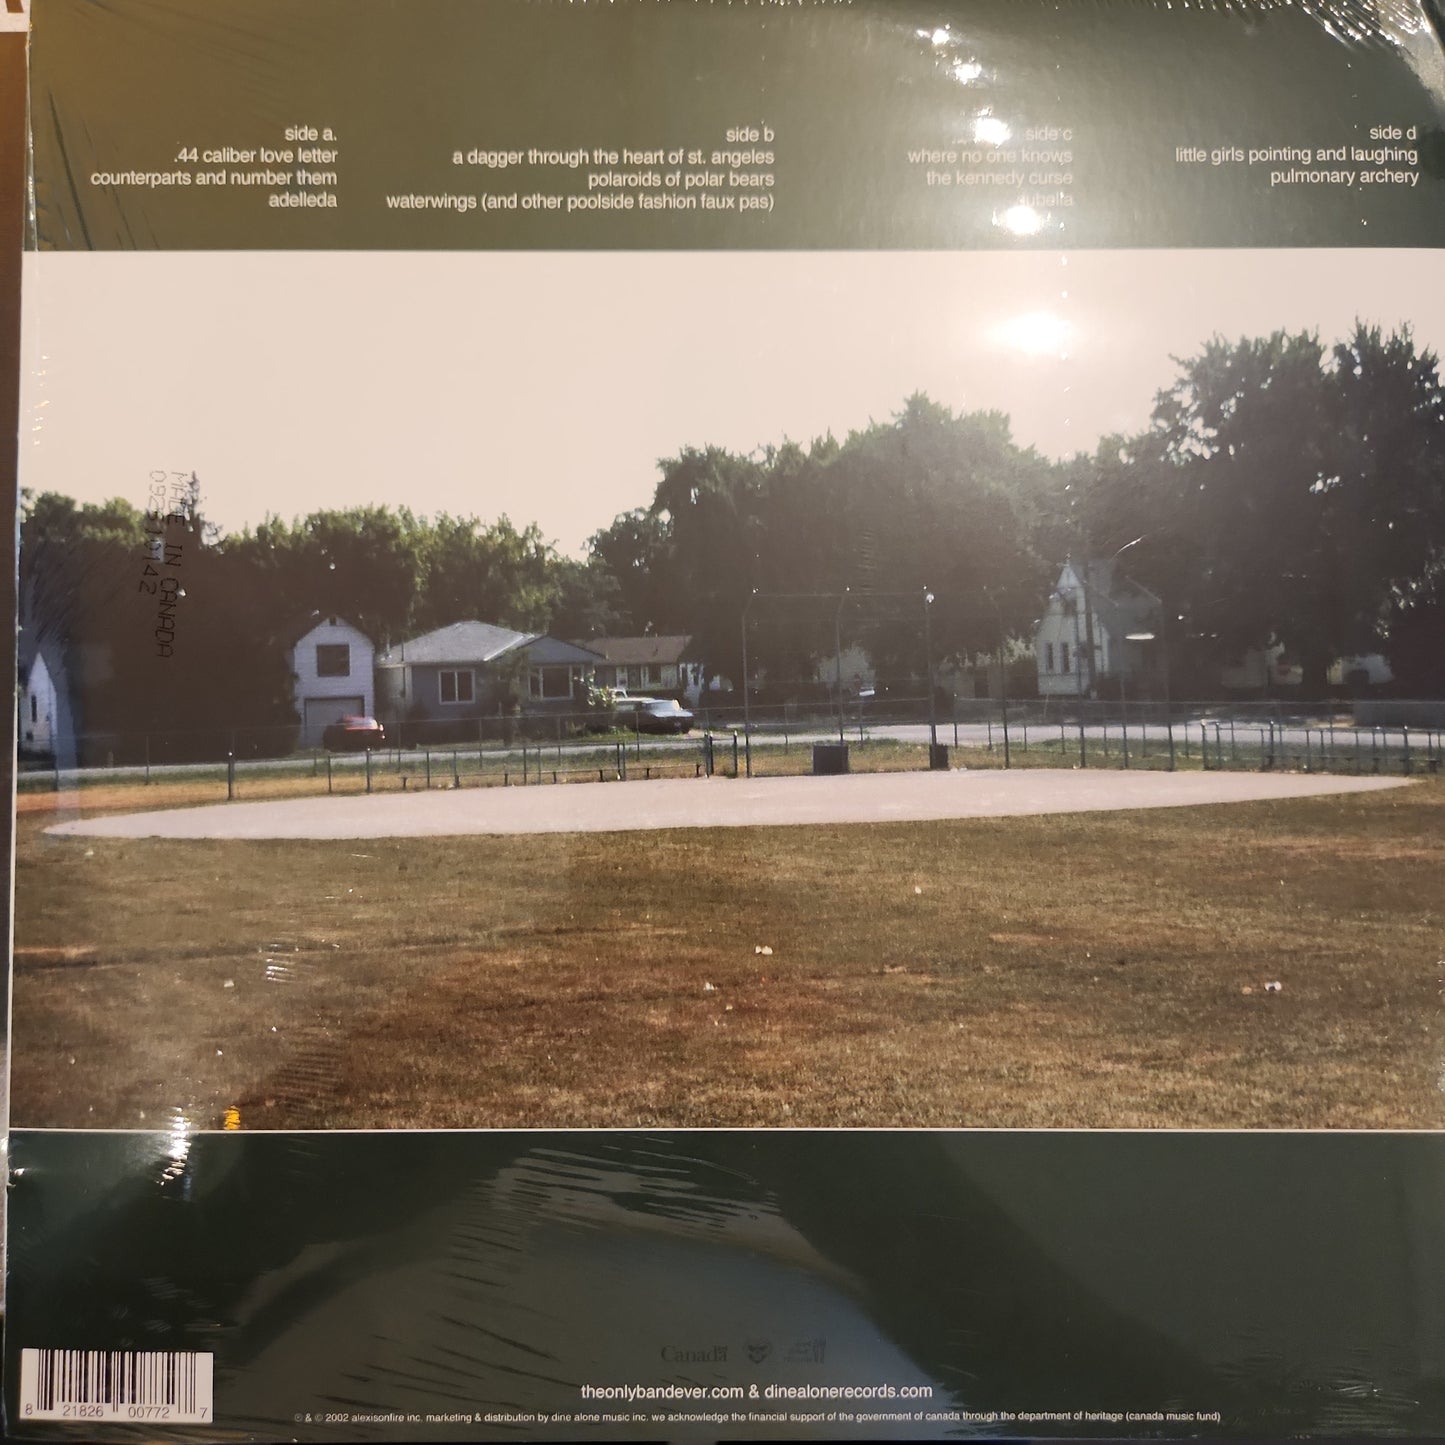 Alexisonfire - Alexisonfire - Double Vinyl LP